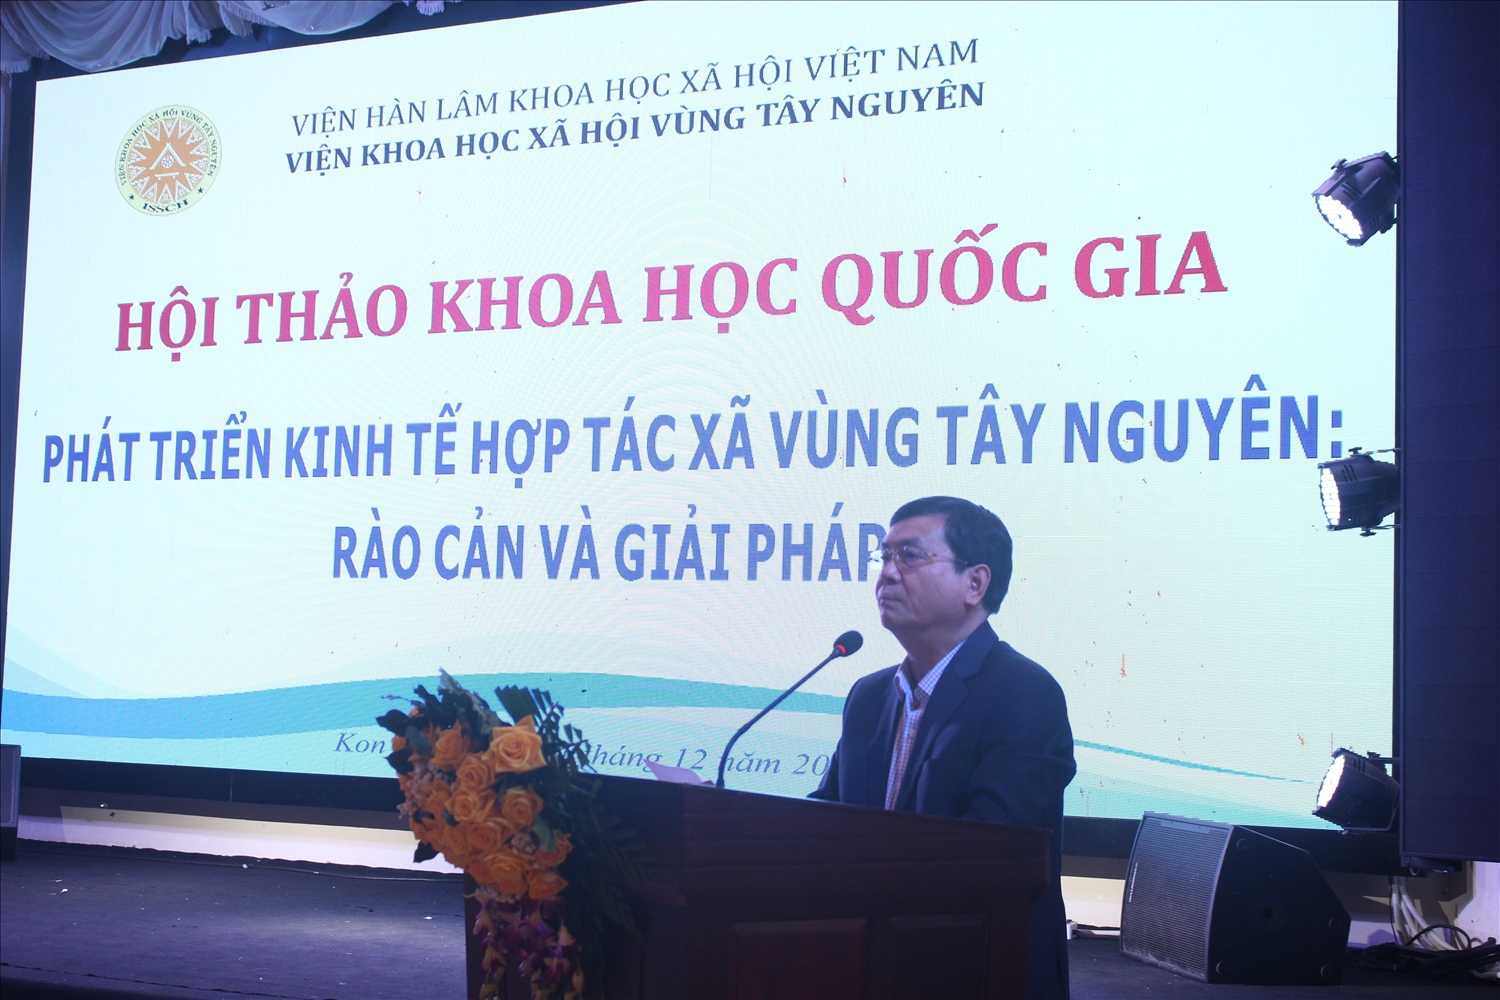 Ông Nguyễn Hữu Tháp, Phó Chủ tịch UBND tỉnh Kon Tum phát biểu tại Hội thảo